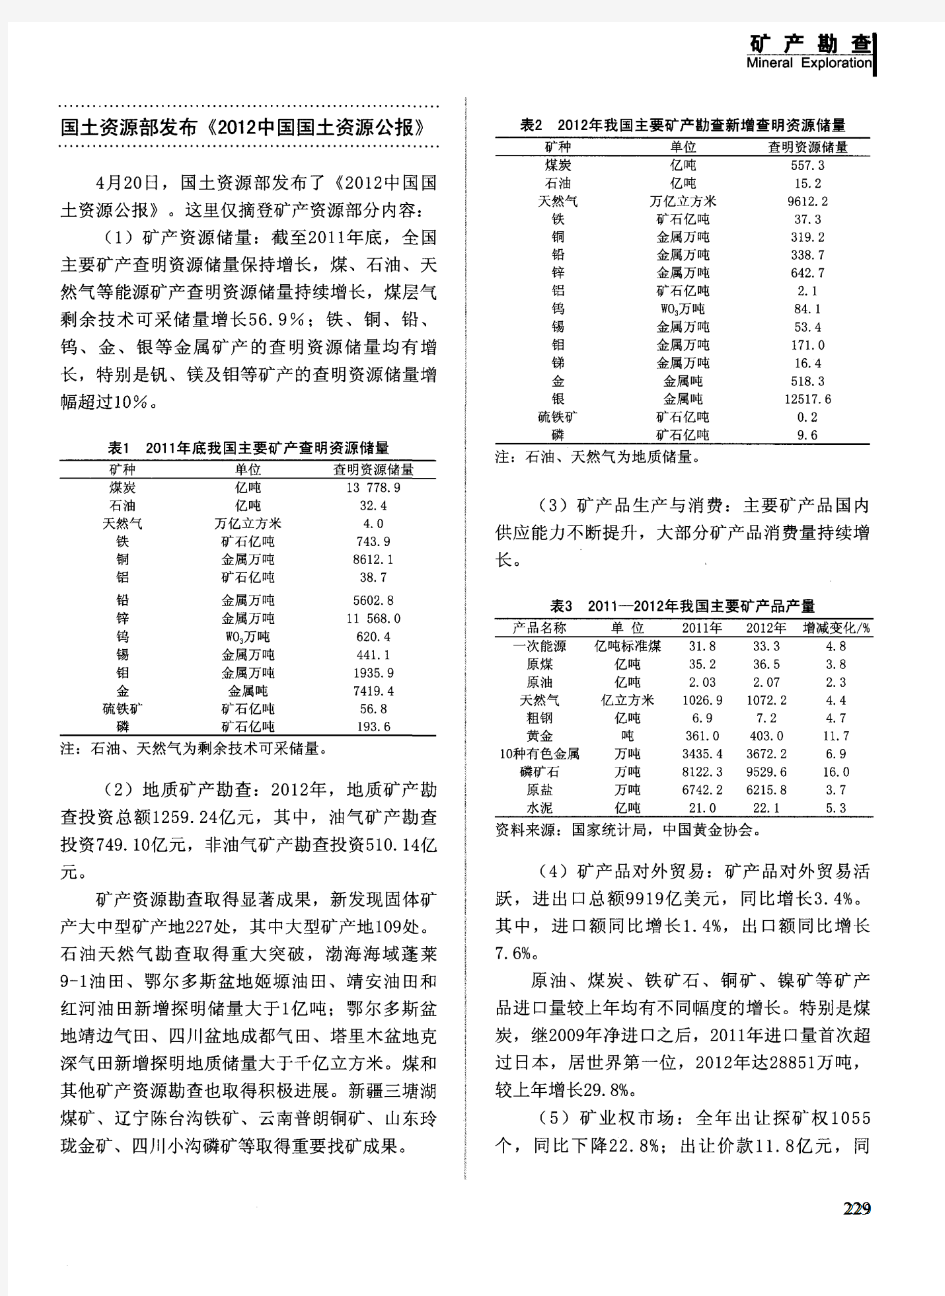 国土资源部发布《2012中国国土资源公报》